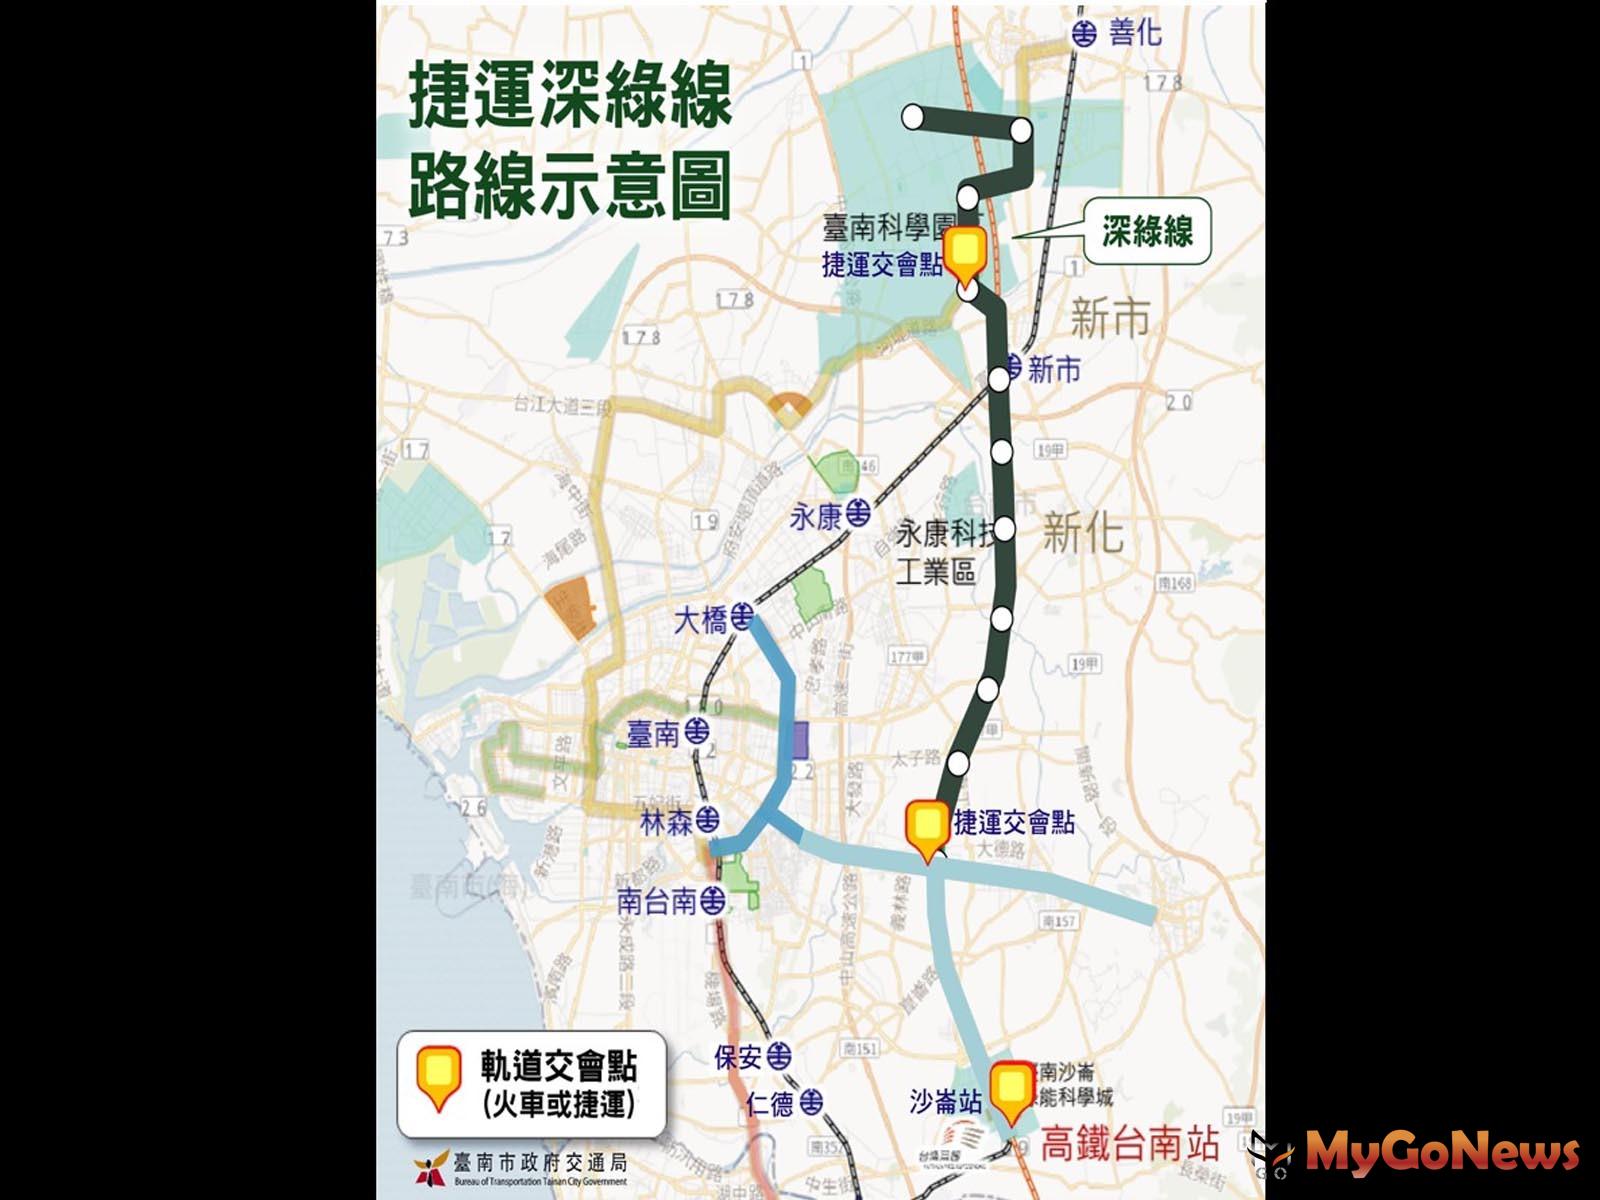 台南捷運深綠線「可行性研究」獲中央補助